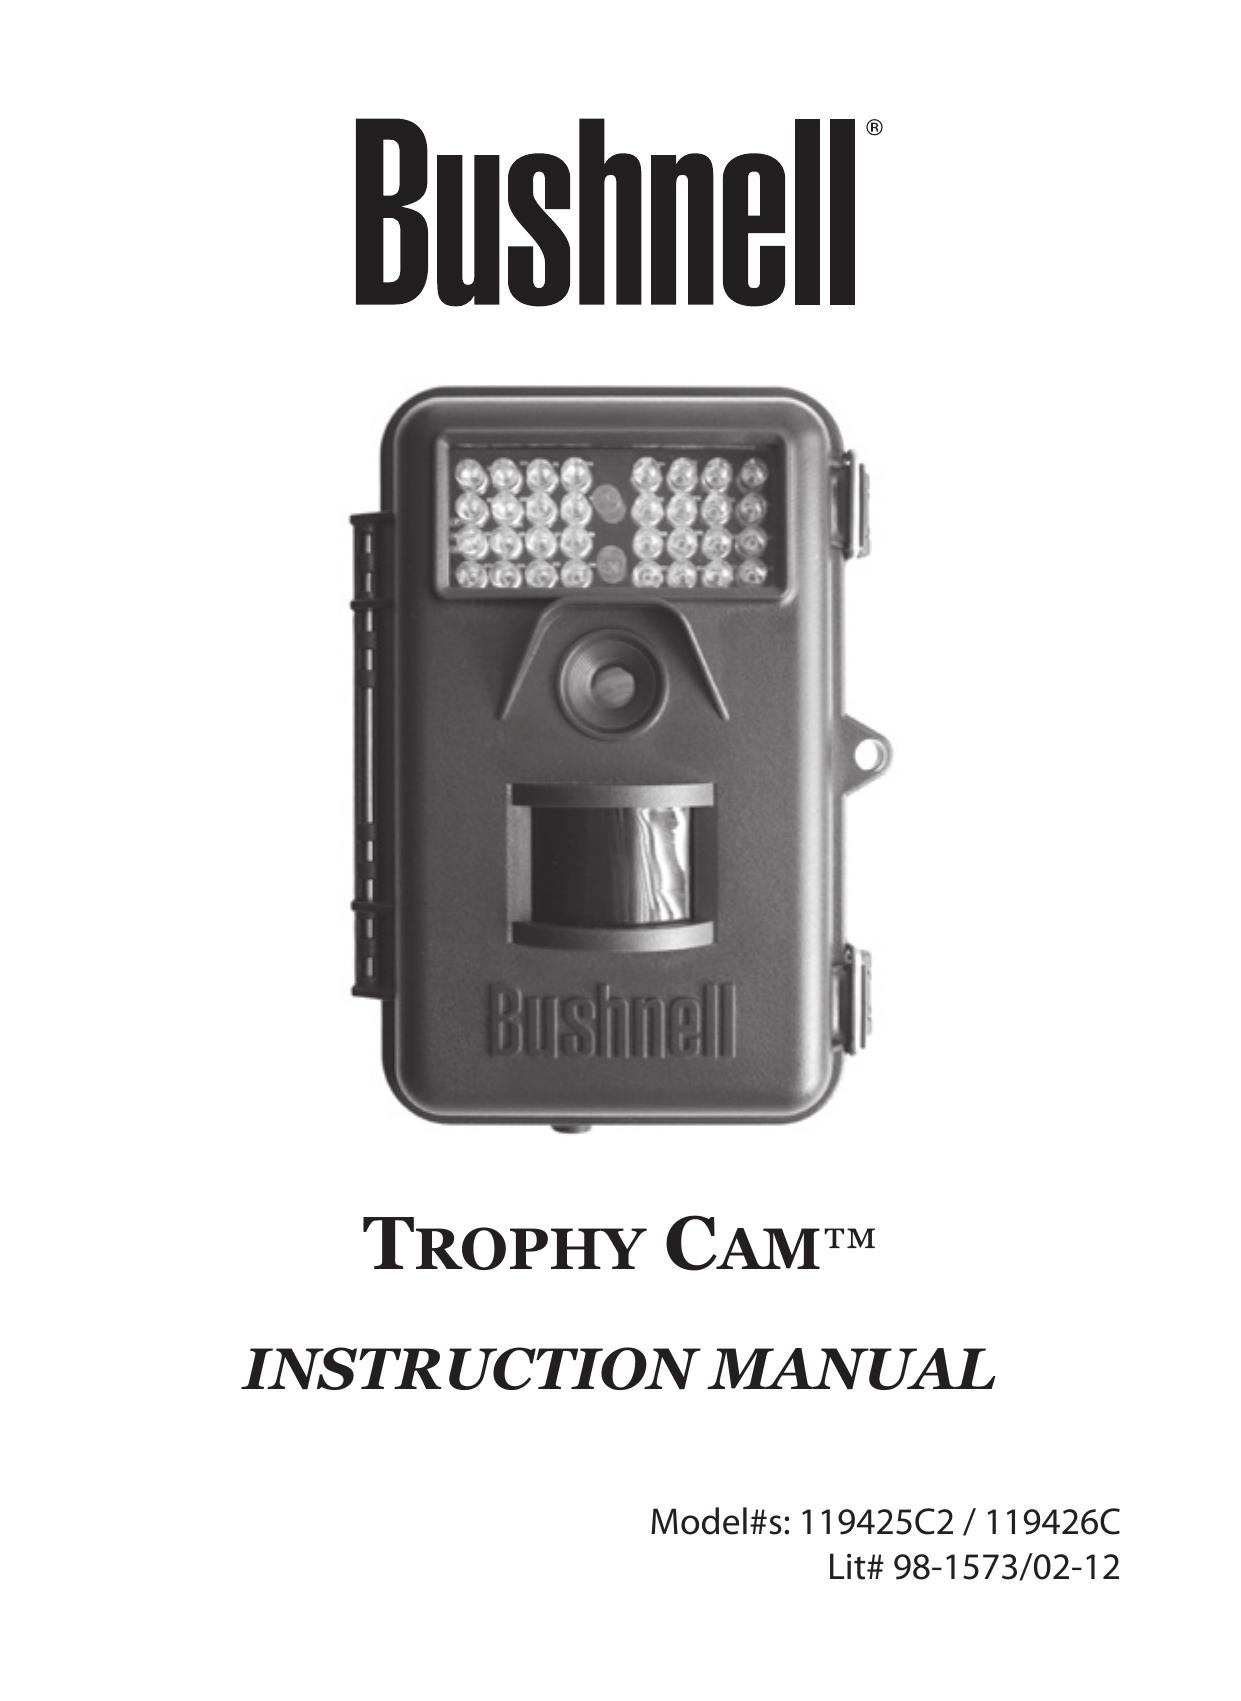 Bushnell 119425C2 Camcorder User Manual